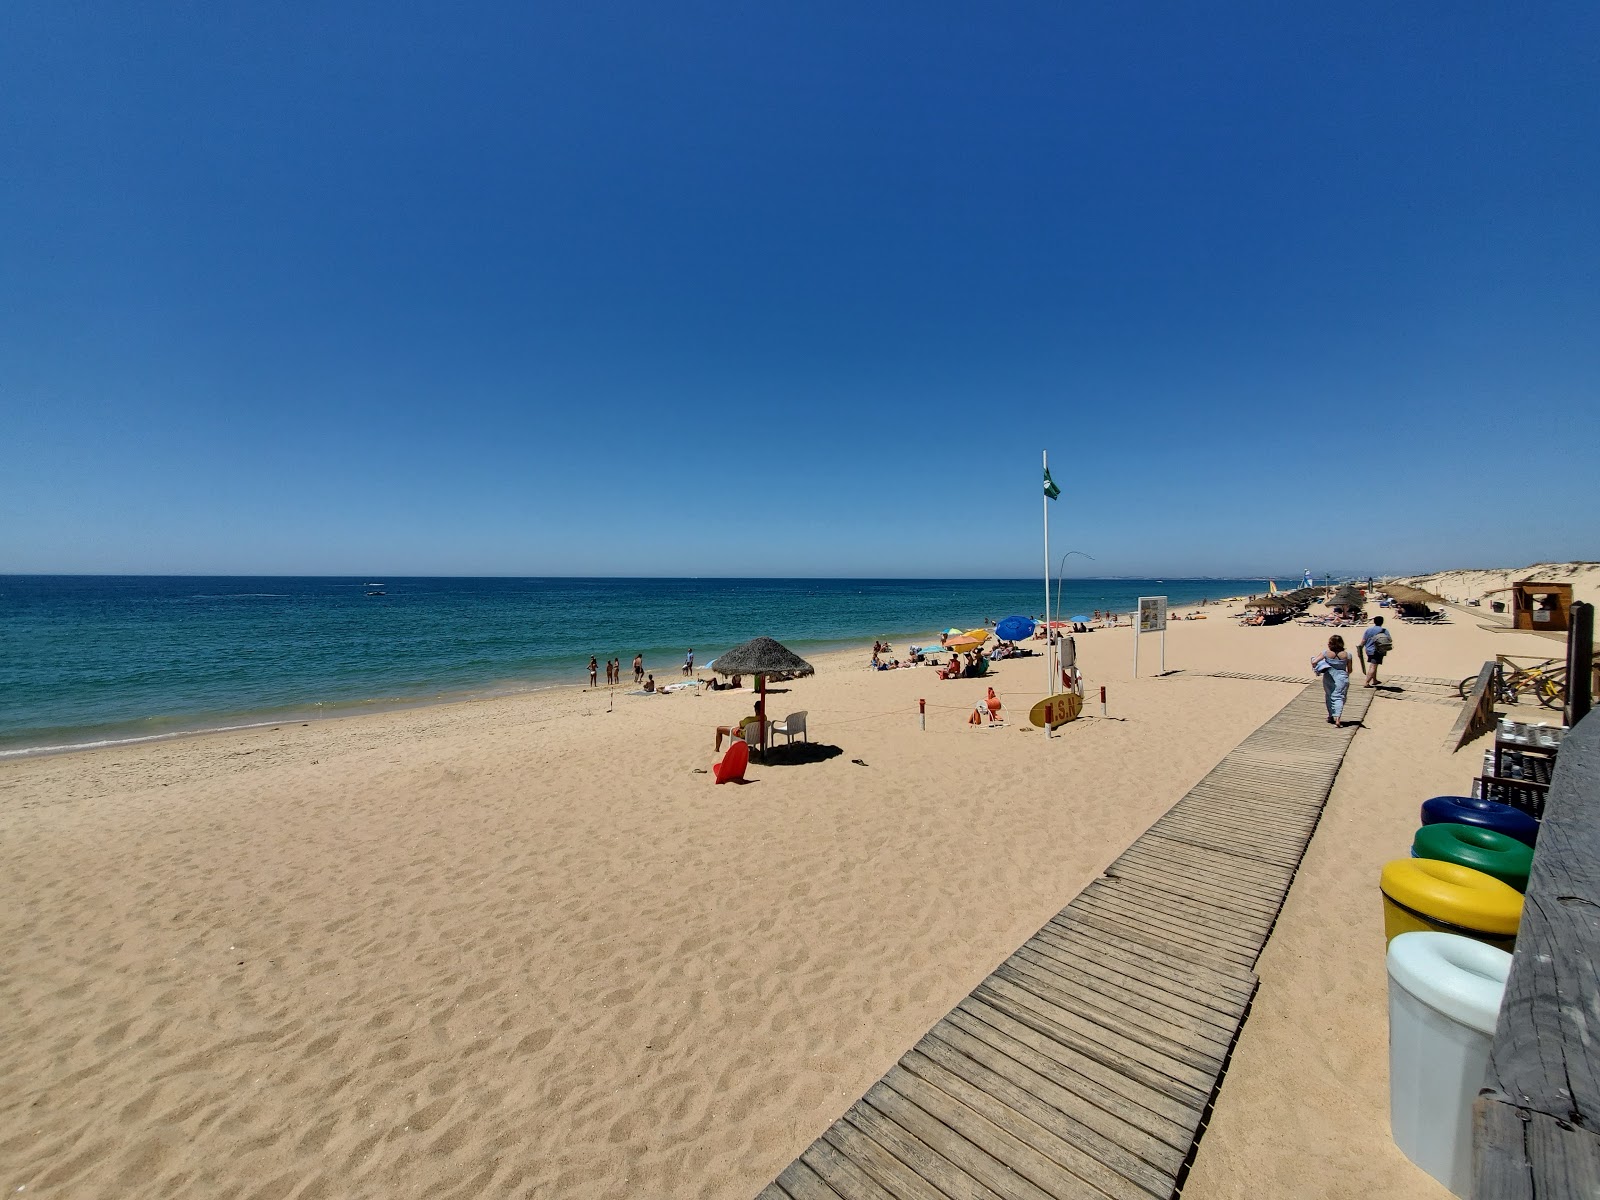 Foto af Quinta do Lago Strand - populært sted blandt afslapningskendere